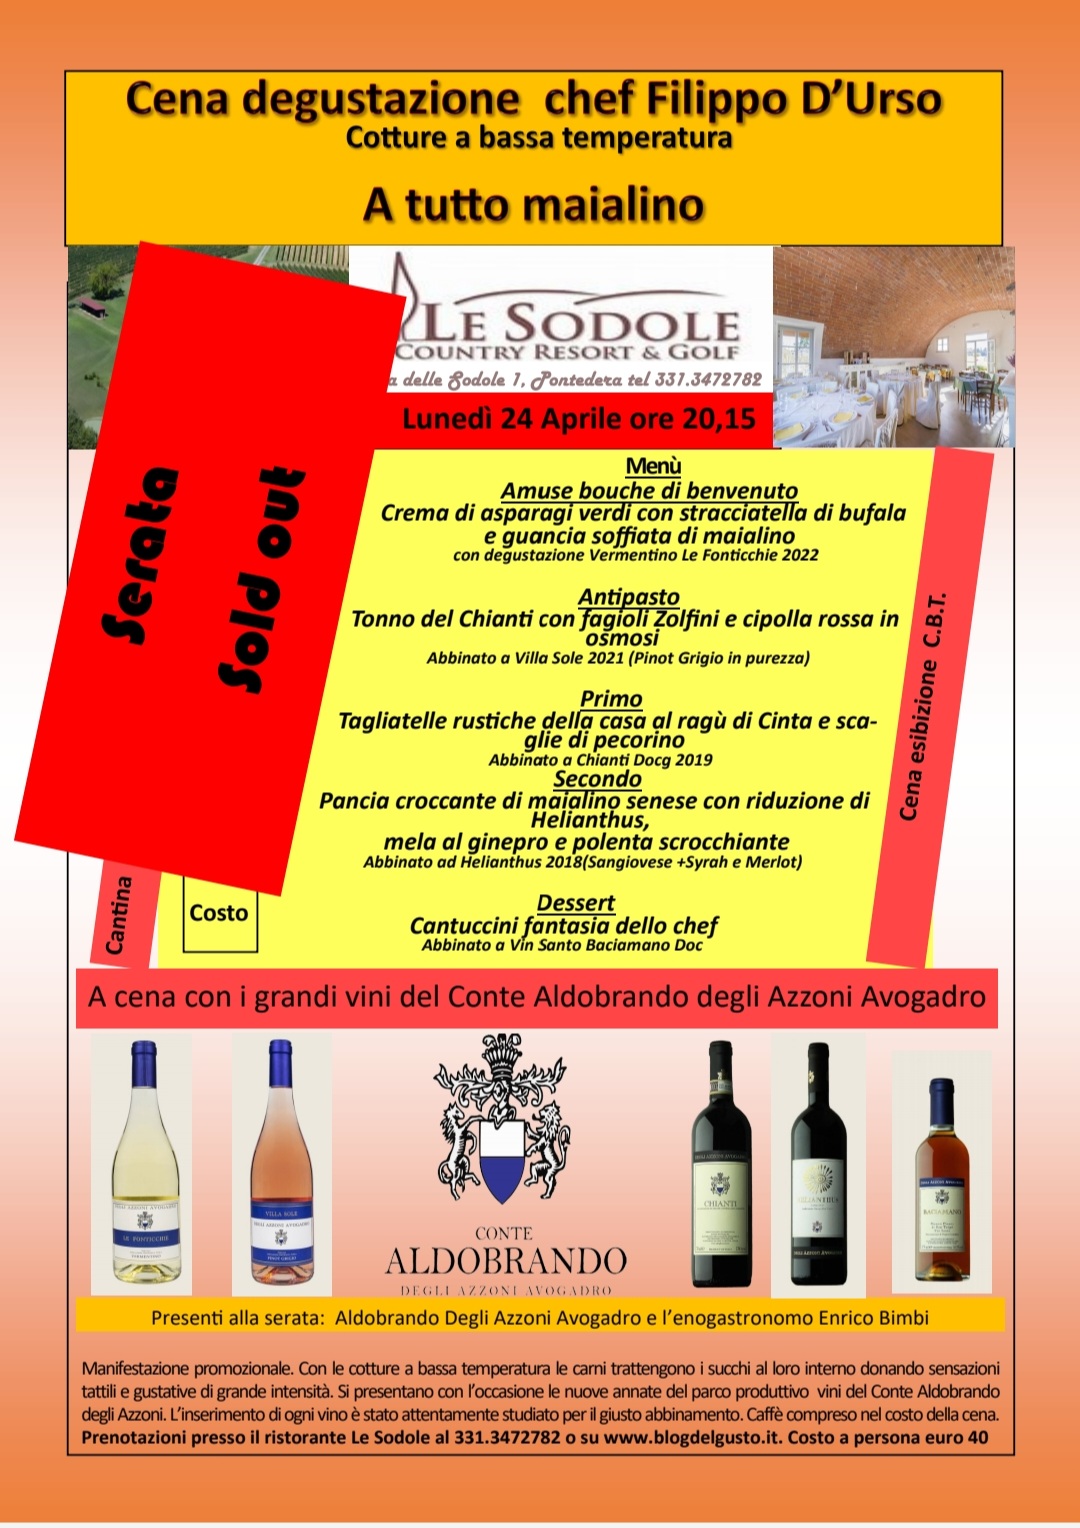 Sold out Le Sodole 24 aprile Cena degustazione C.B.T. a tutto maialino Chef Filippo D'Urso